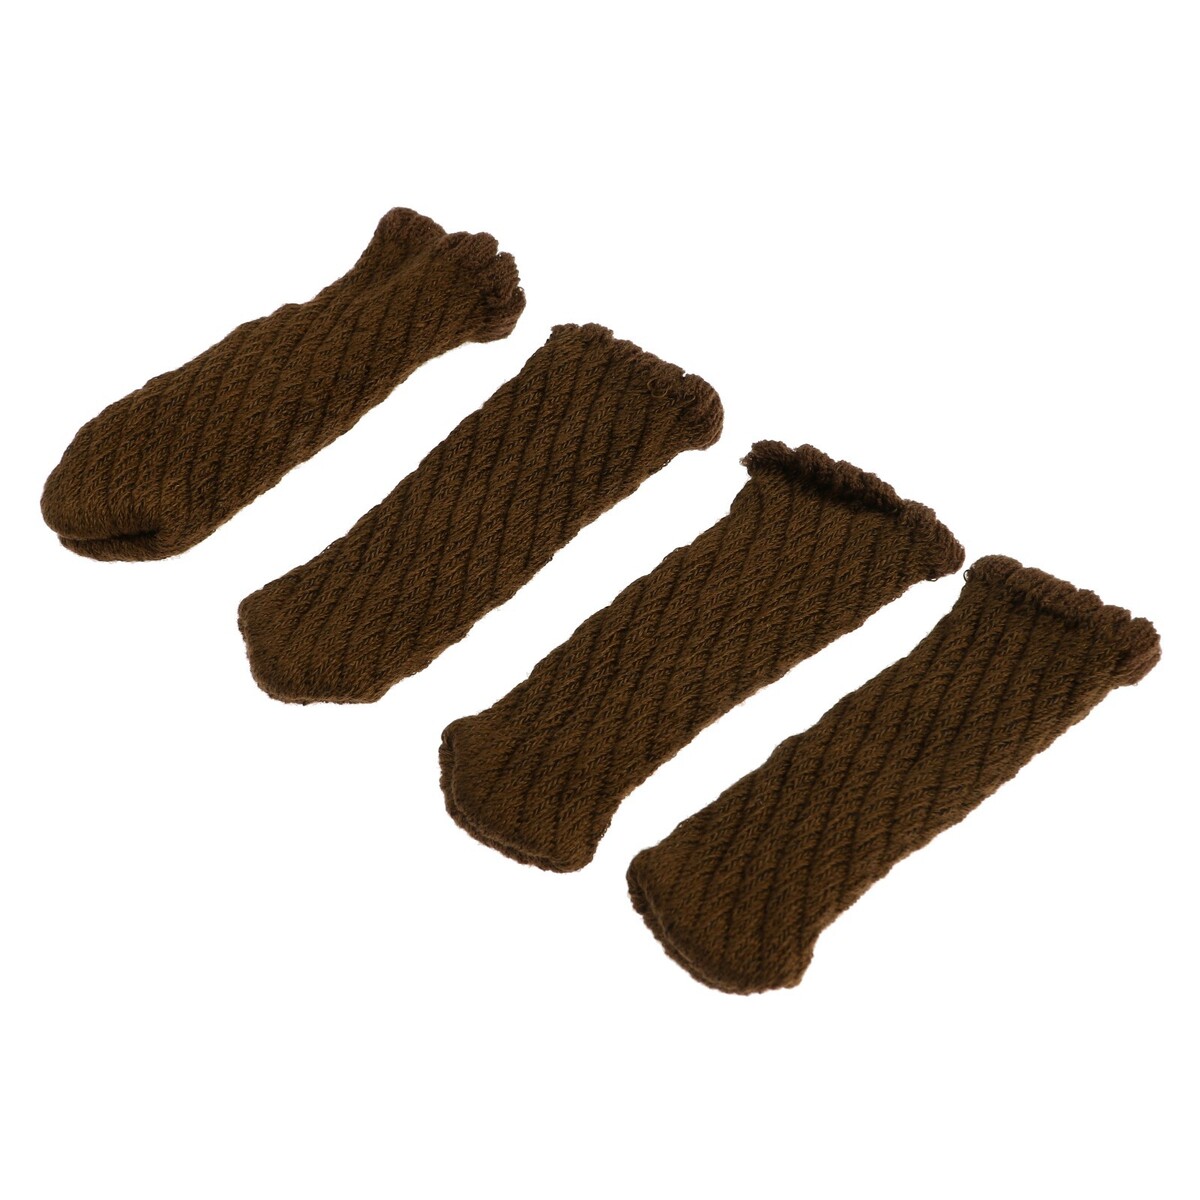 Носки для мебели cappio, цвет коричневый комплект для перетяжки мебели 50 × 100 см иск кожа поролон 20 мм коричневый